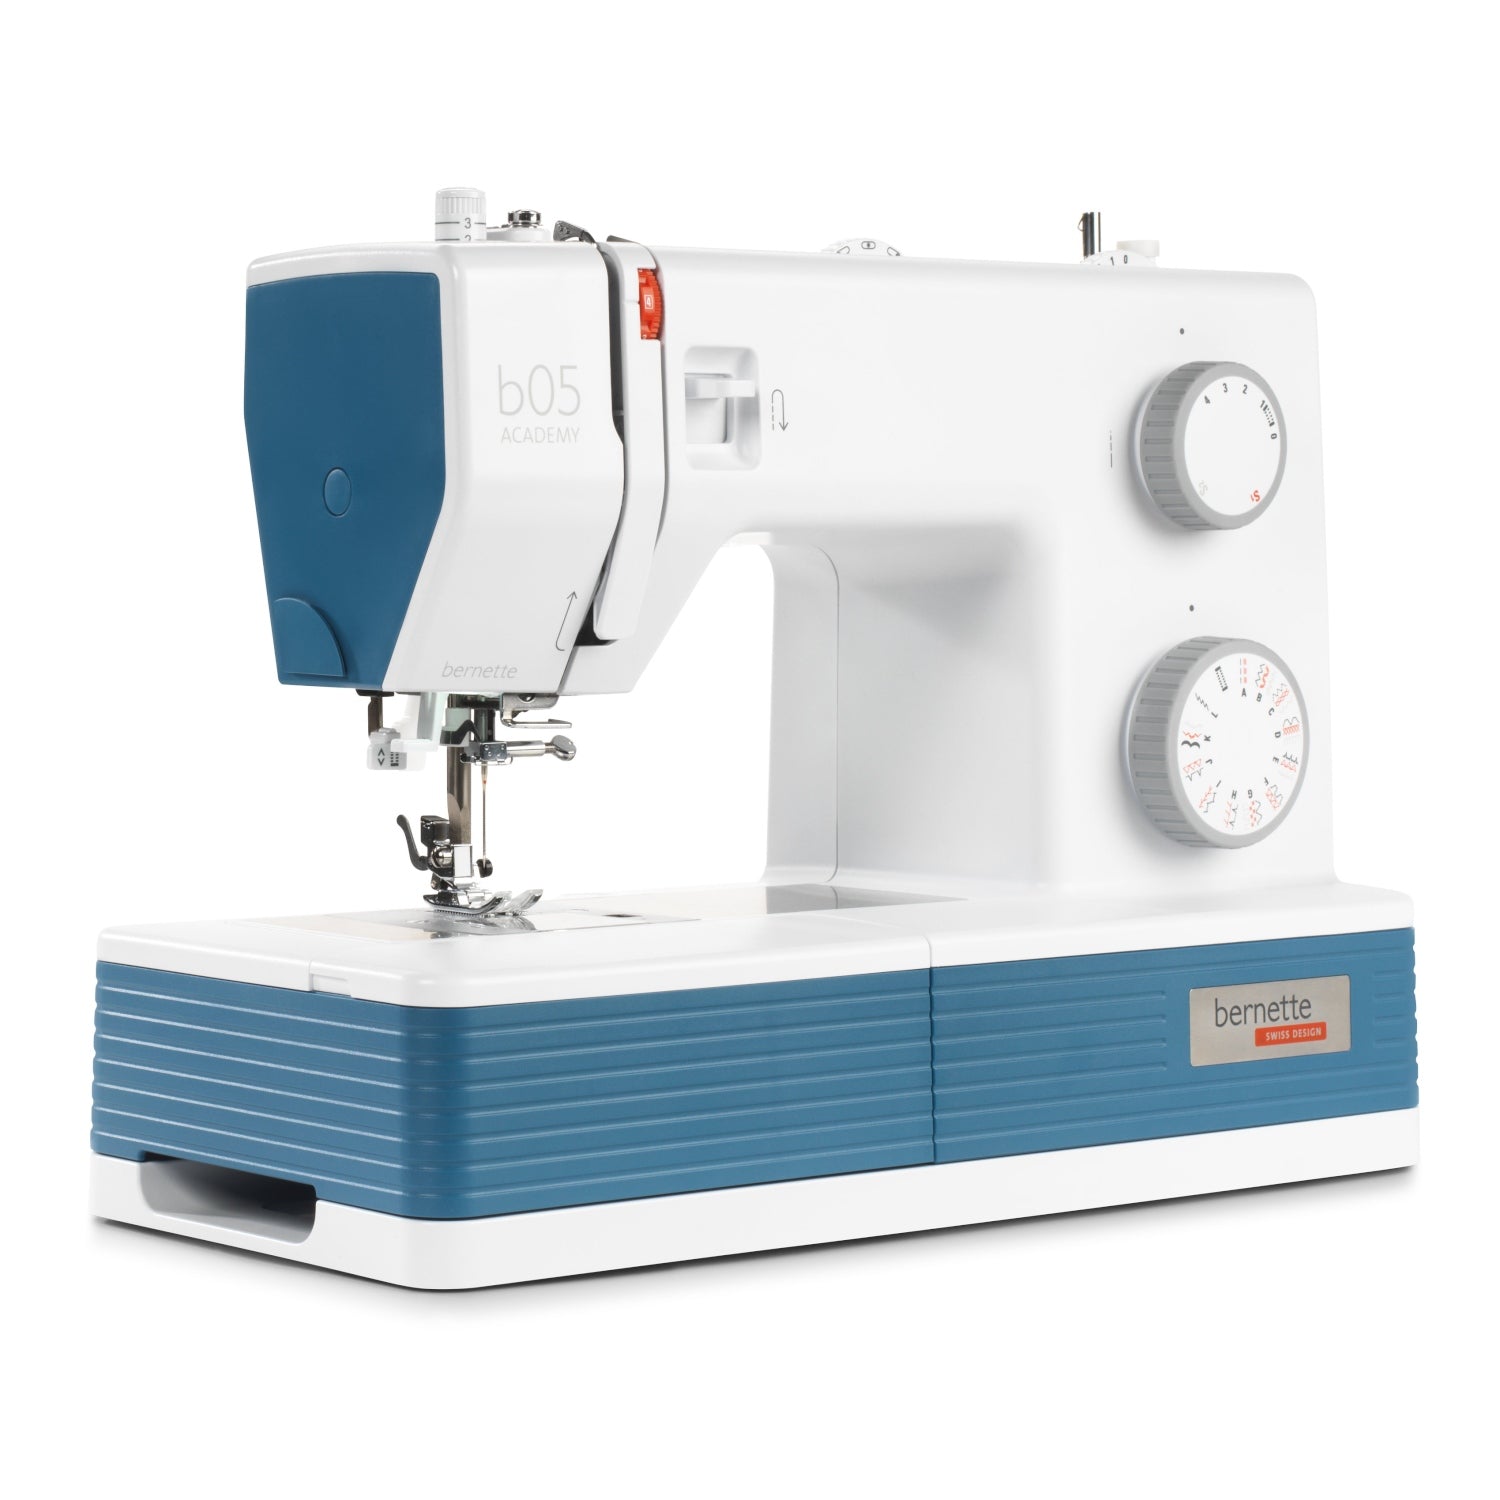 Bernette 35 - Sewing Machine